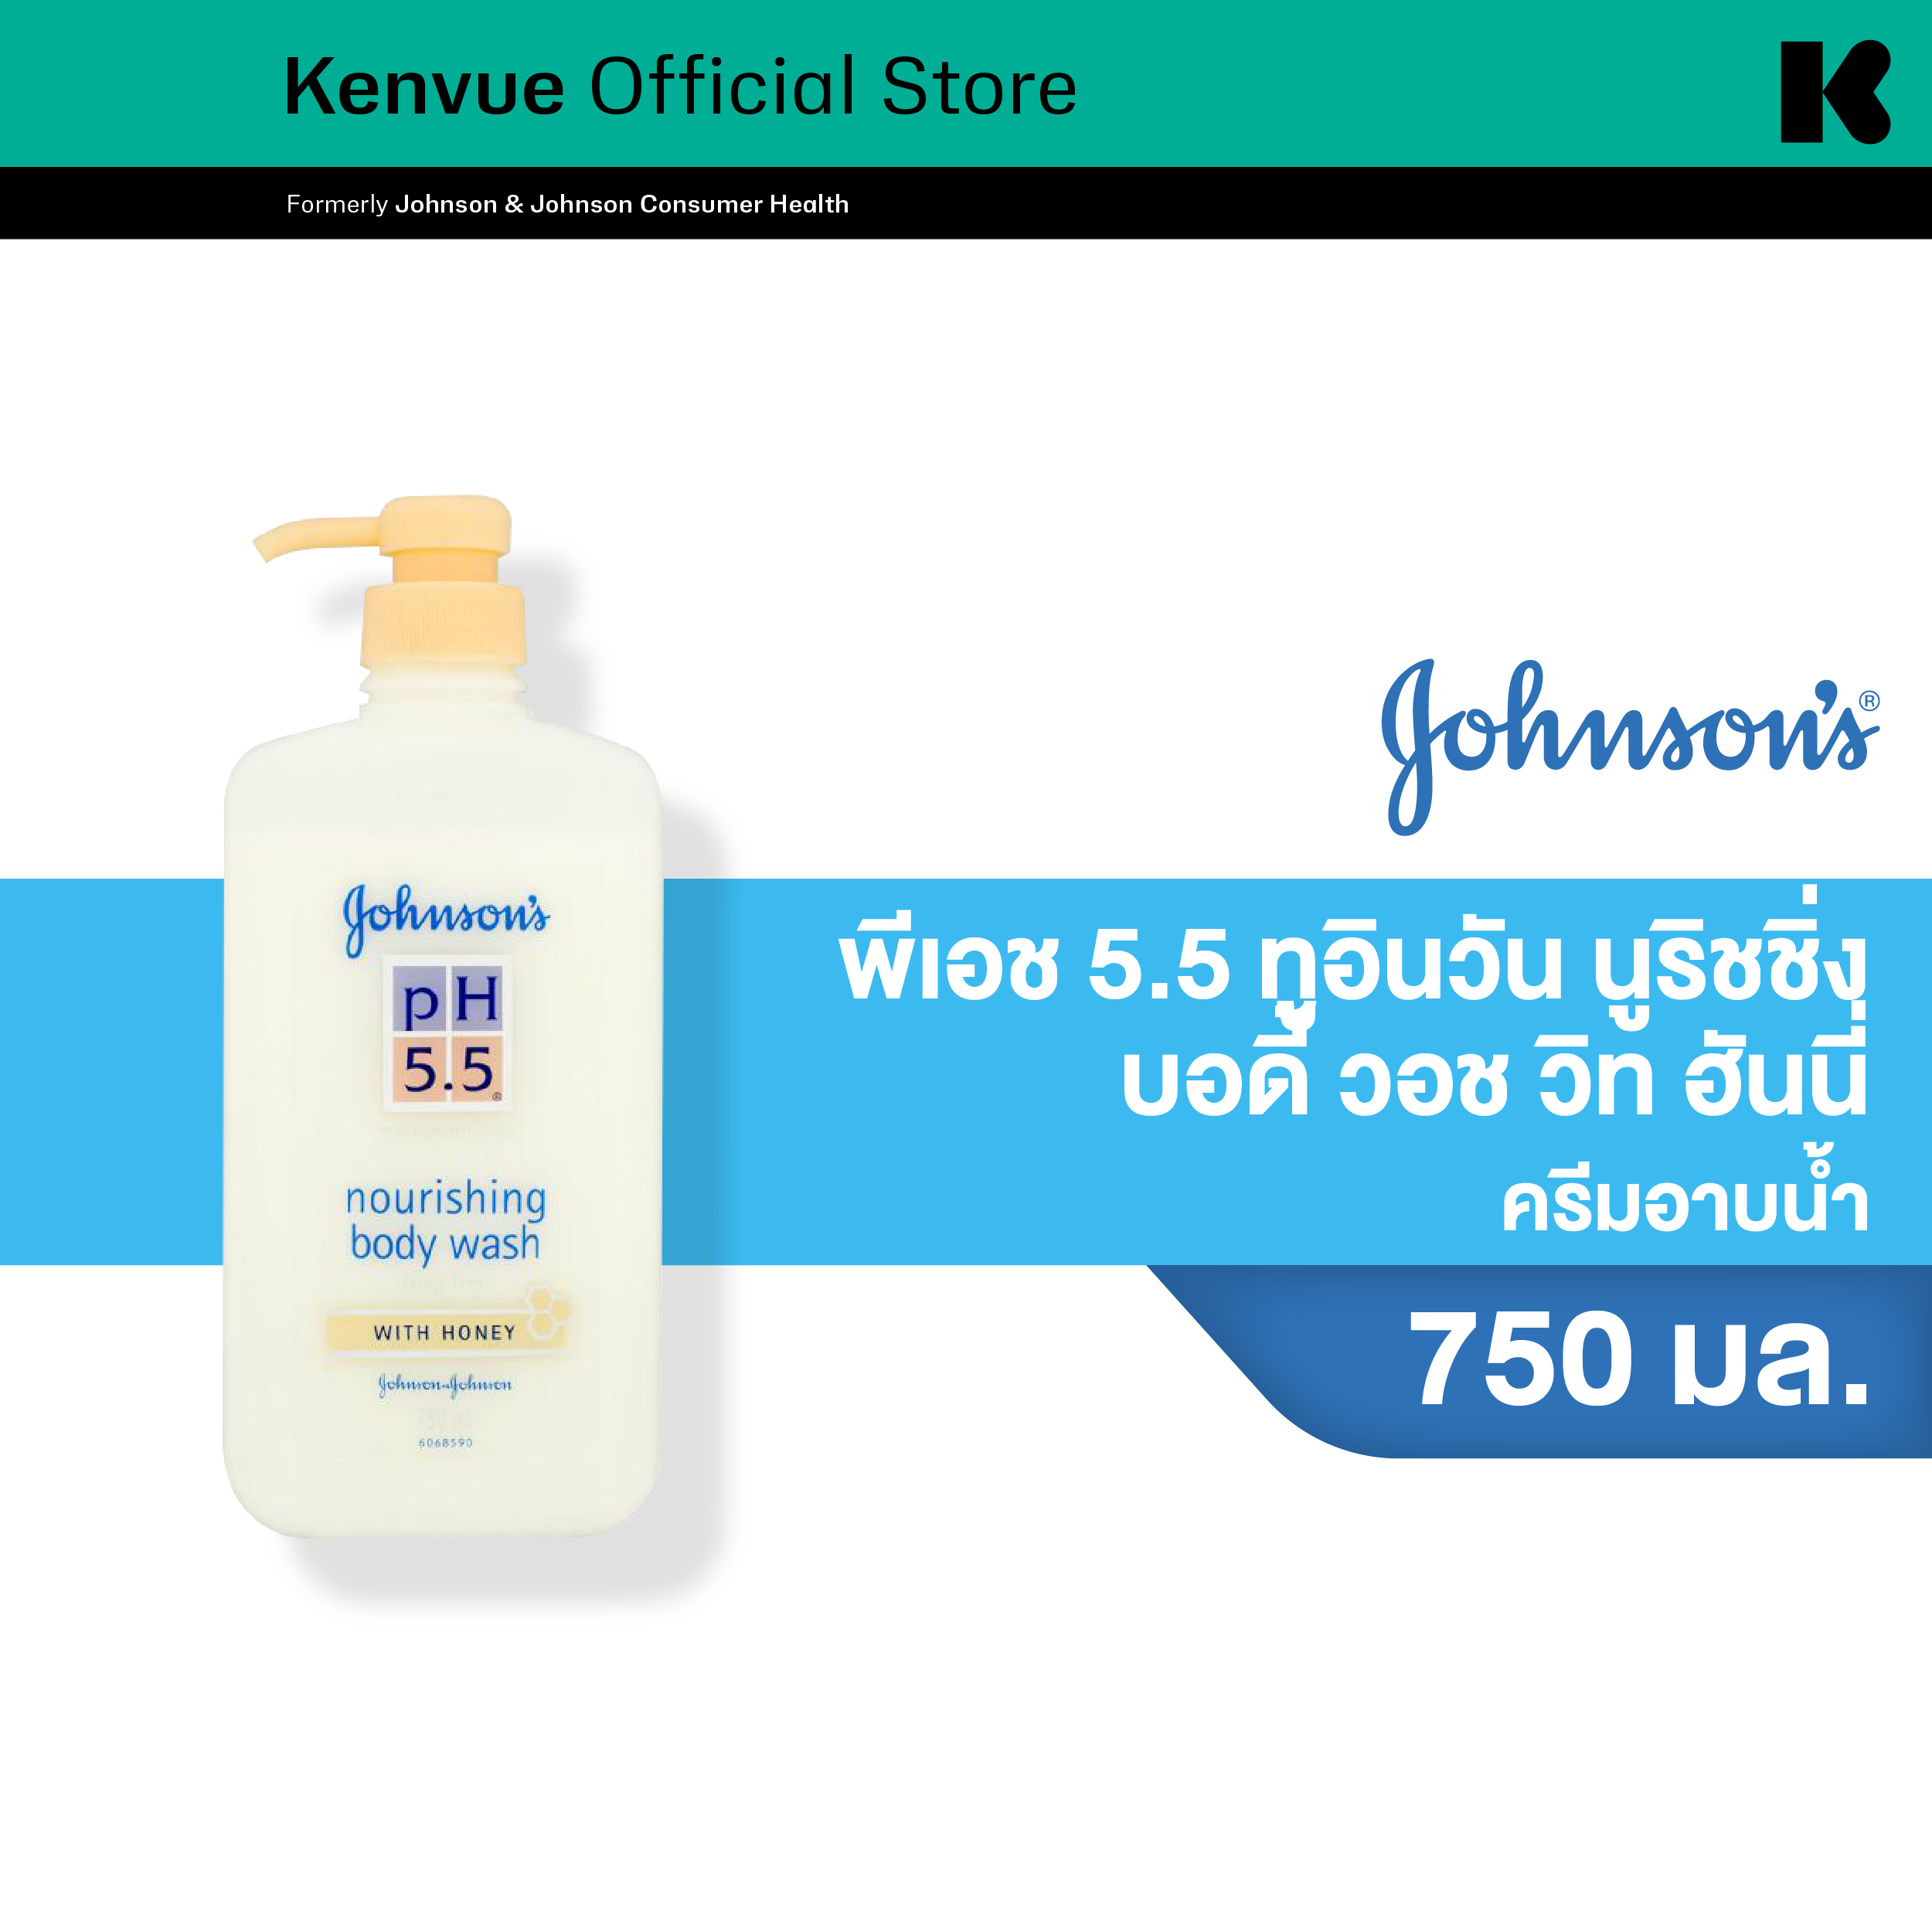 จอห์นสันบอดี้แคร์ ครีมอาบน้ำ พีเอช 5.5 ทูอินวัน นูริชชิ่ง บอดี้ วอช วิท ฮันนี่ 750 มล. Johnson Body Care pH5.5 Nourishing Body Wash with Honey 750 ml.